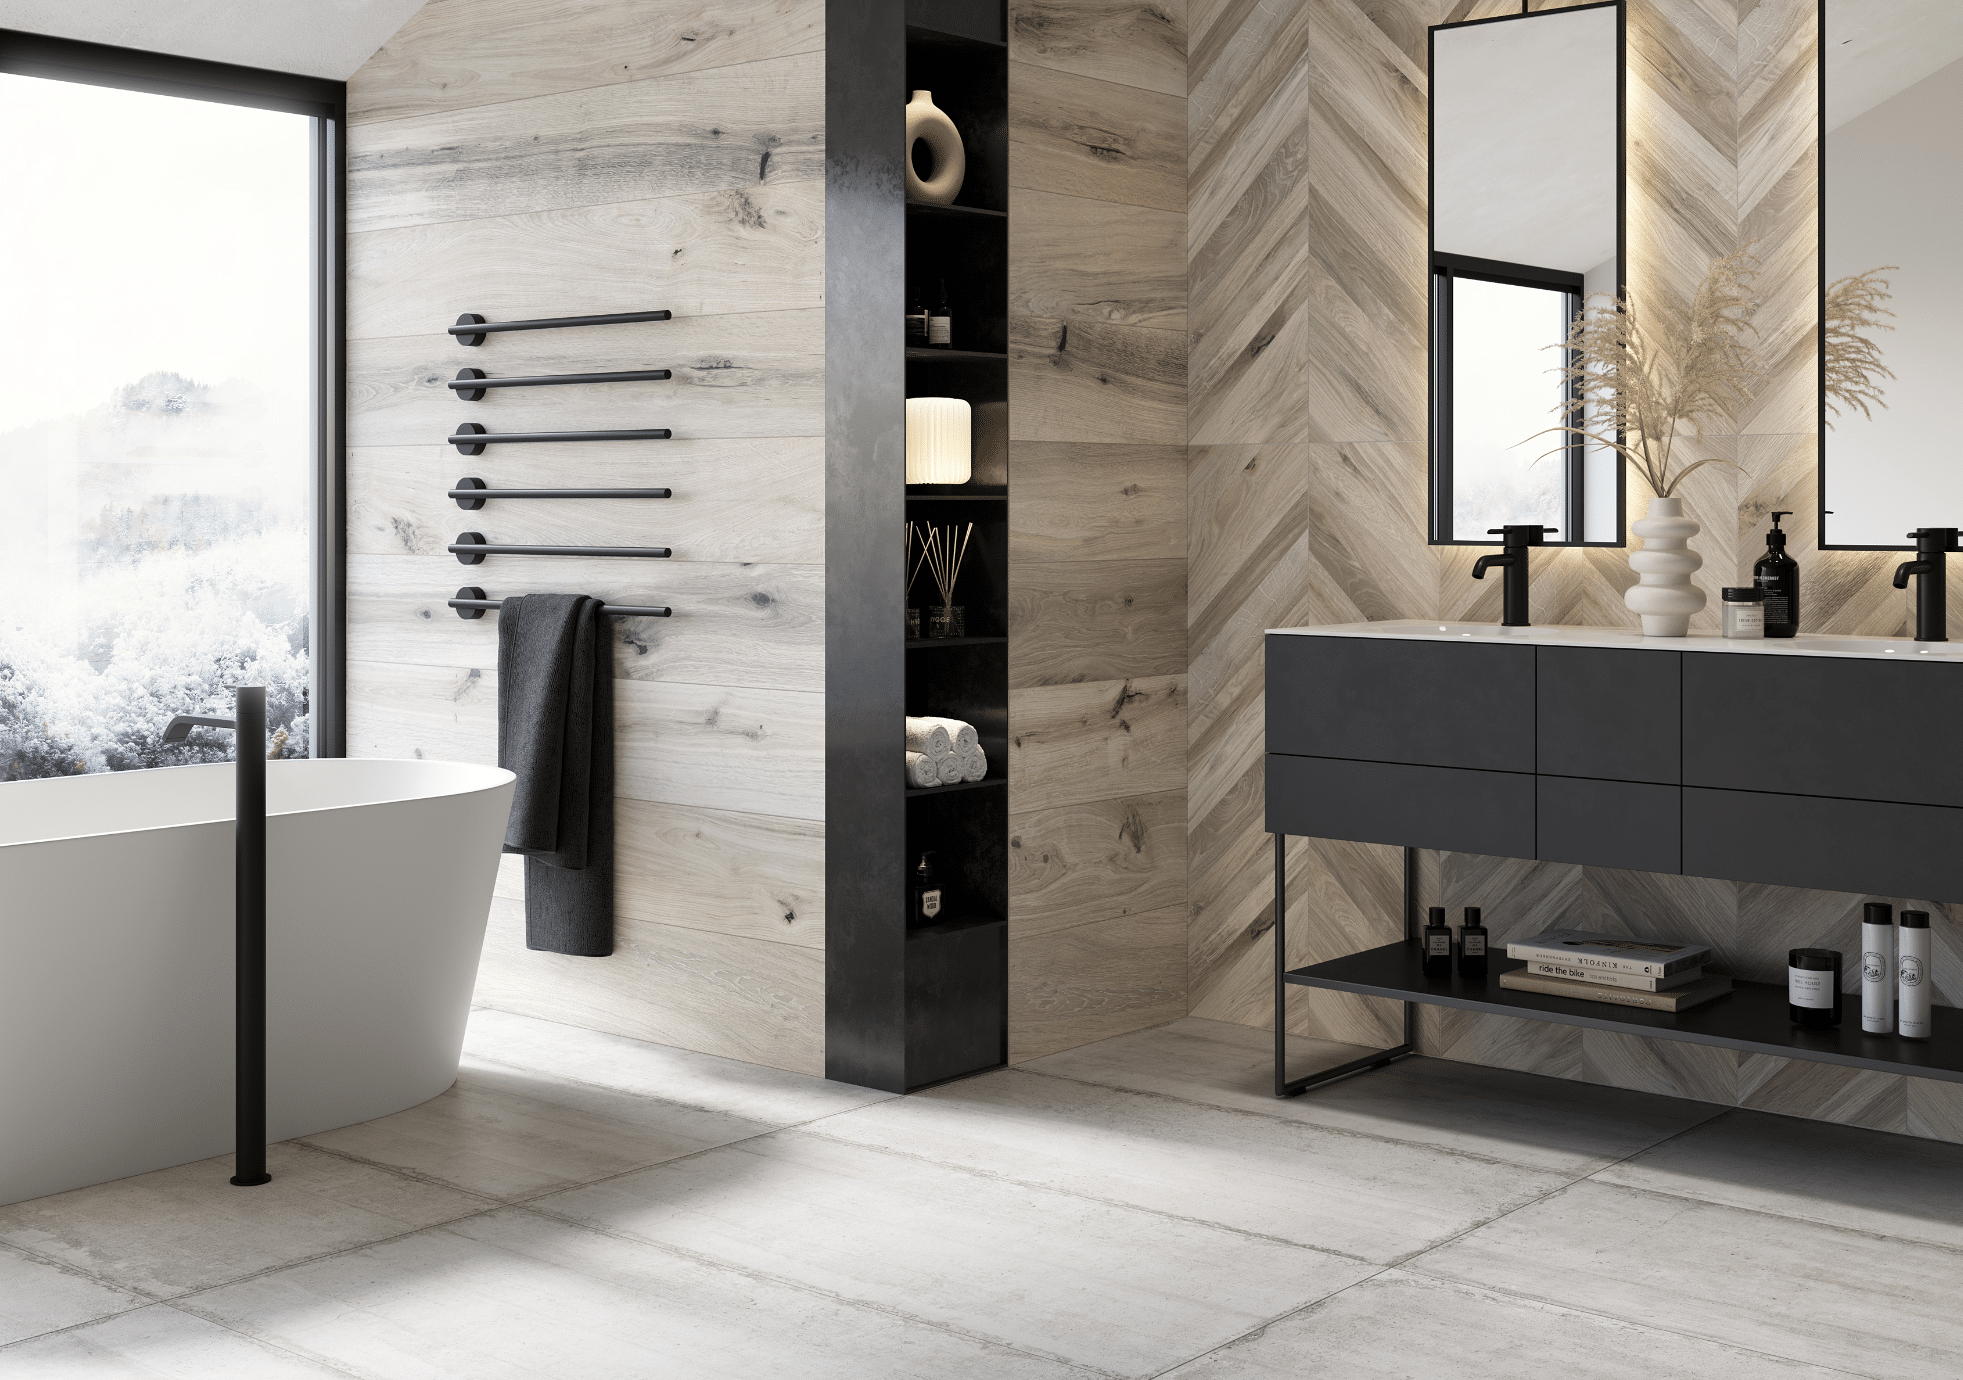 Fliesendorf zeigt ein Badezimmer mit großen, rechteckigen Fliesen am Boden und Holzverkleidung an der Wand mit einem Doppelwaschtisch in schwarz mit zwei Spiegeln.